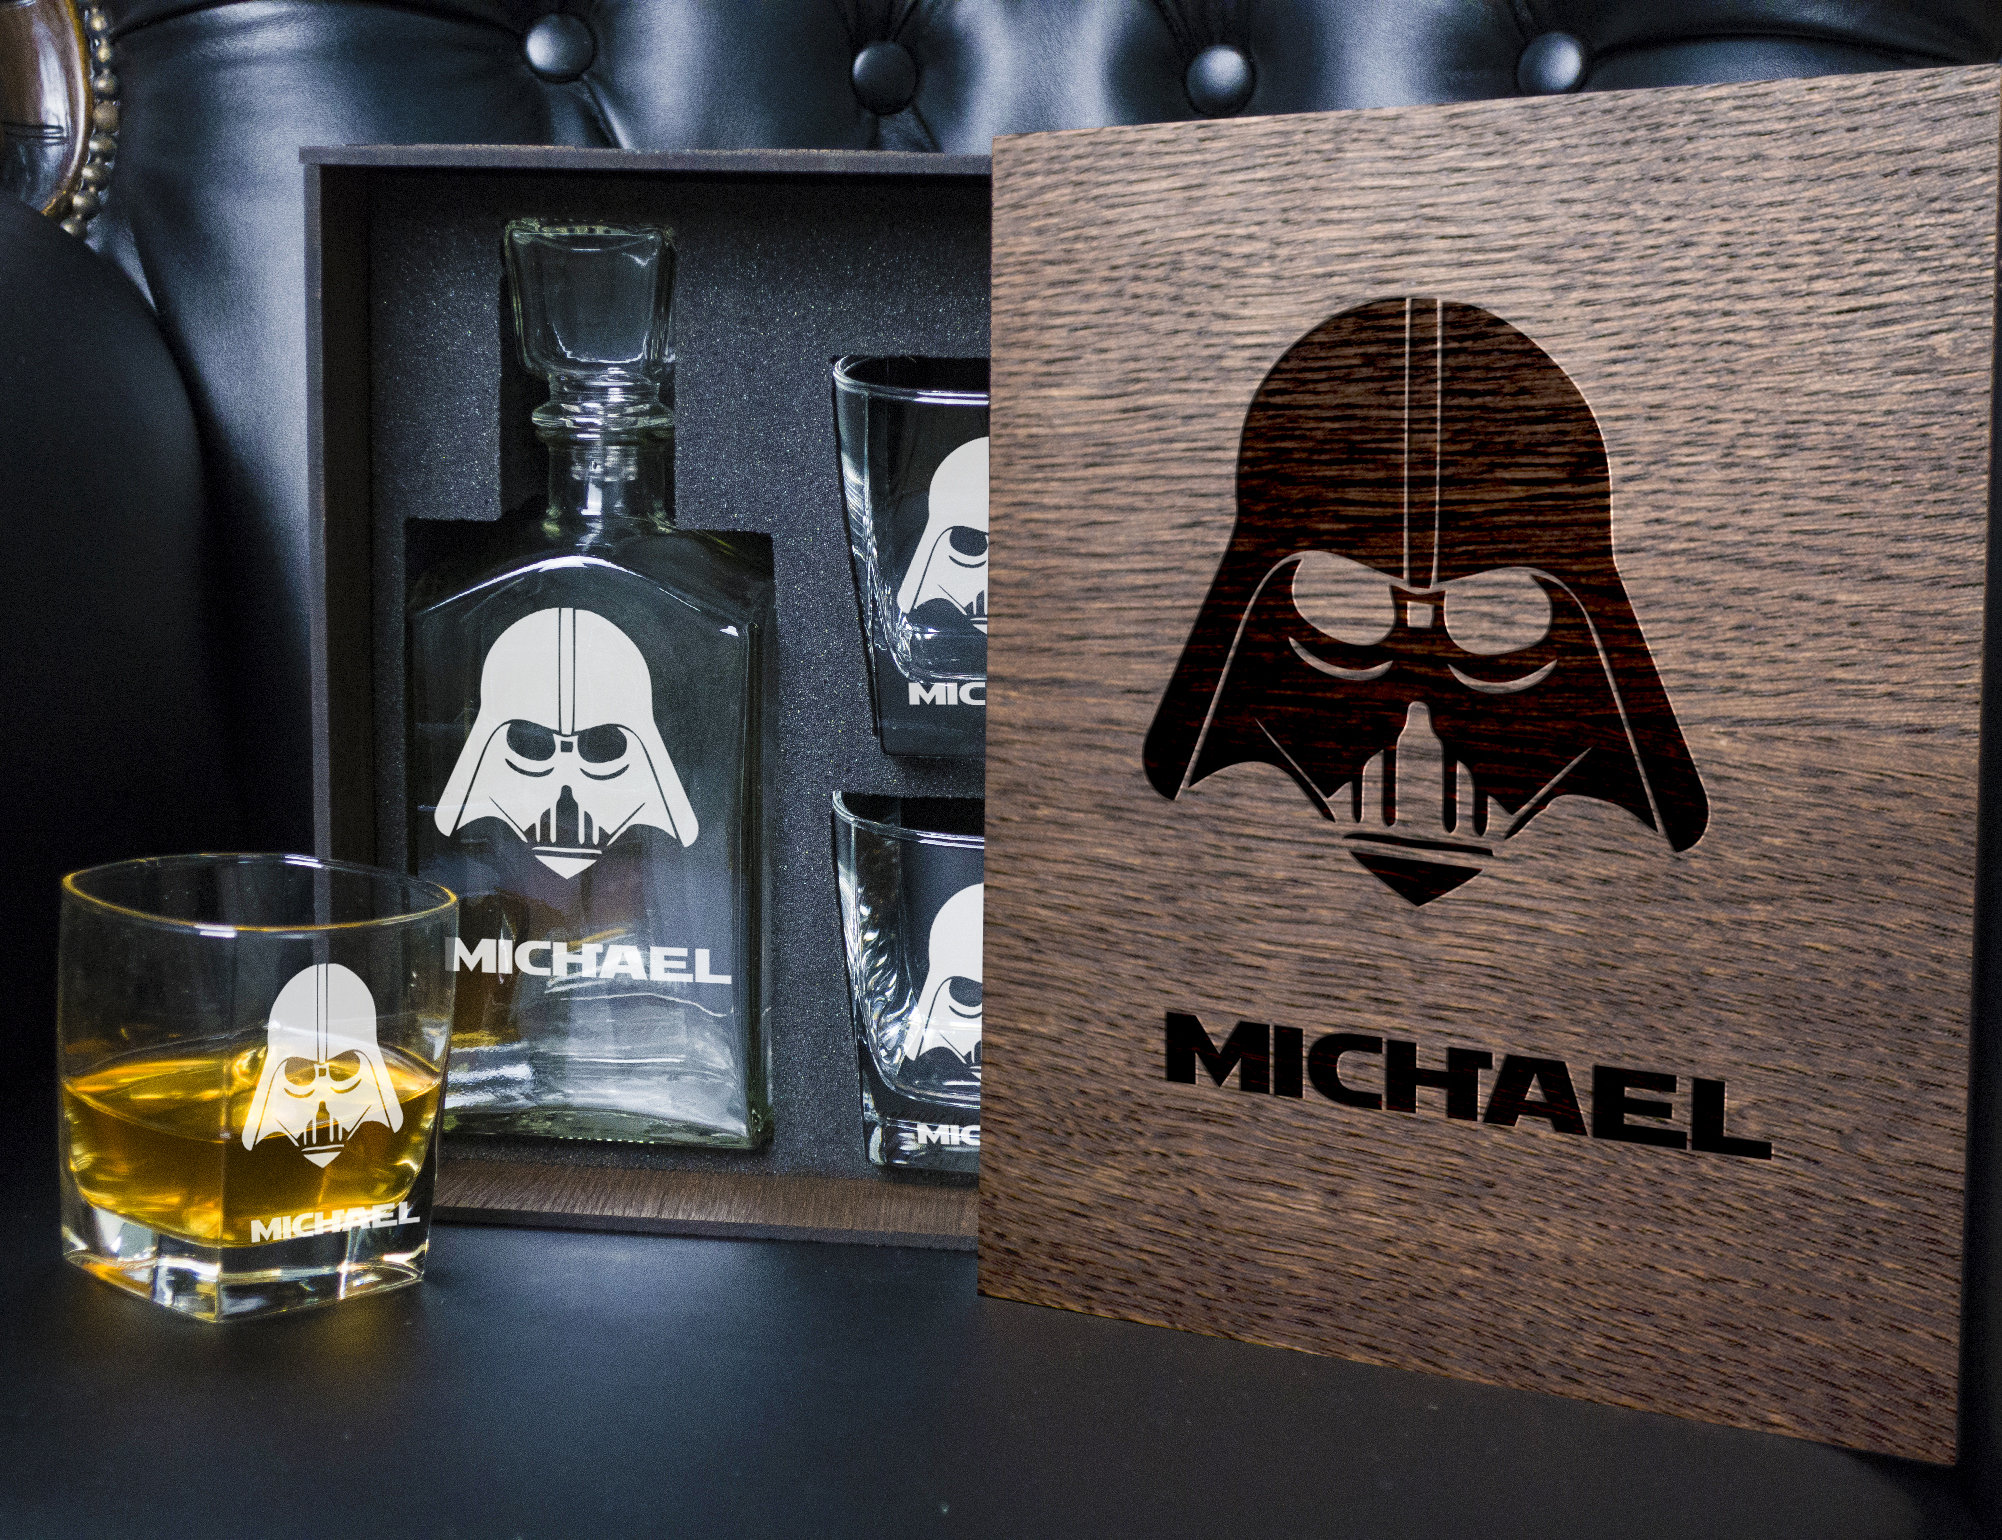 Star Wars Star Wars Gift Star Wars Whiskey Decanter Set #gadget